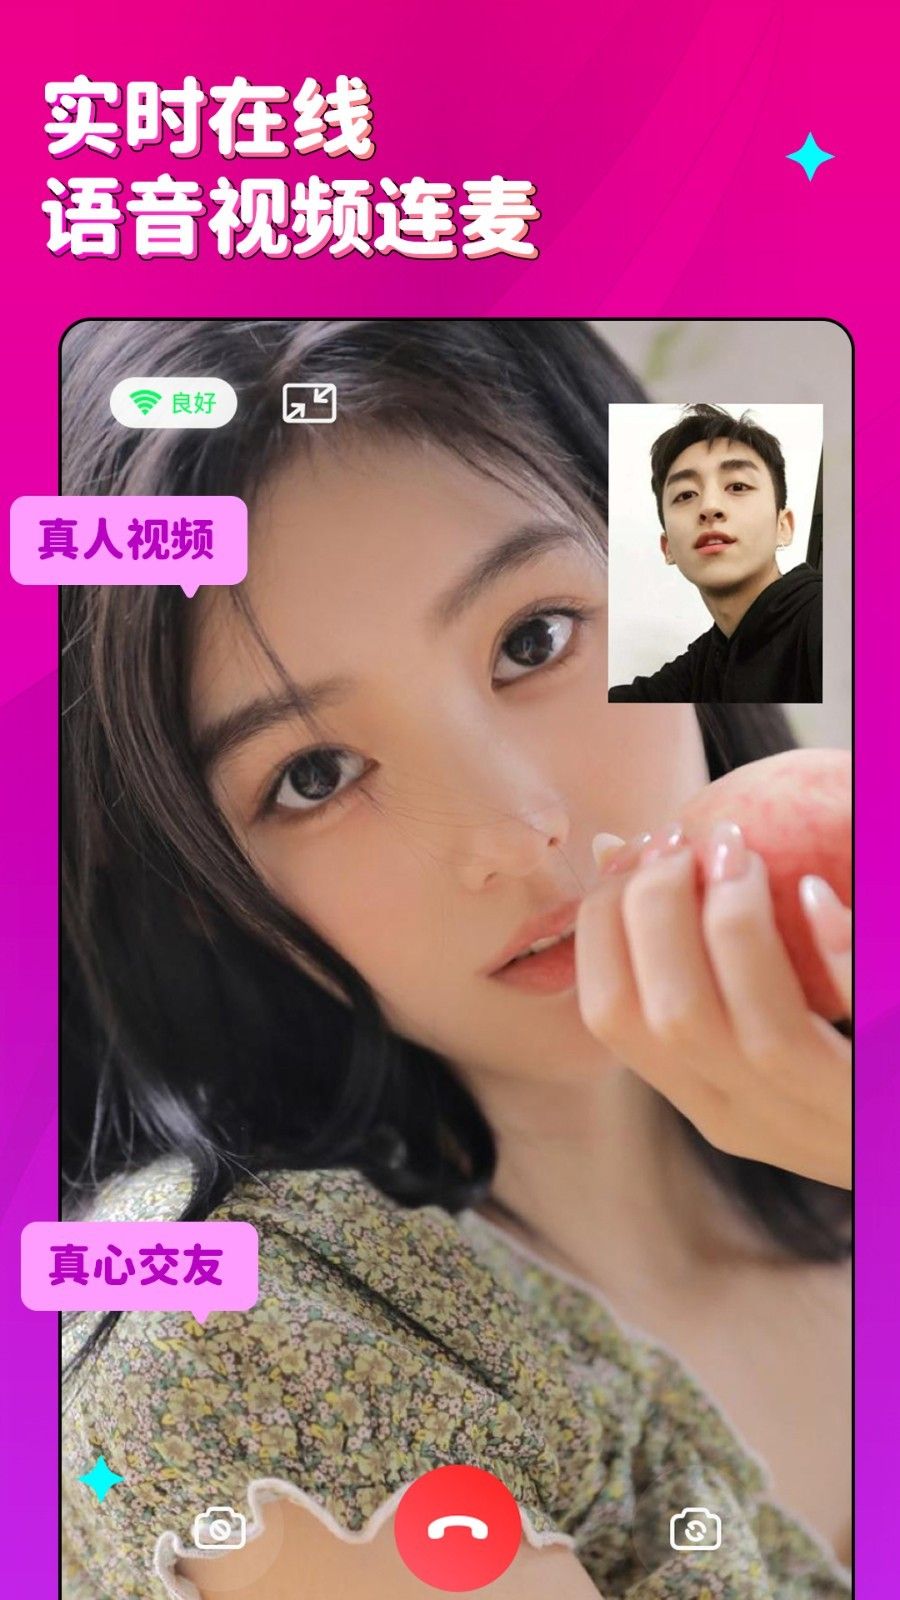 蜜恋相亲交友平台手机版官方app图片1